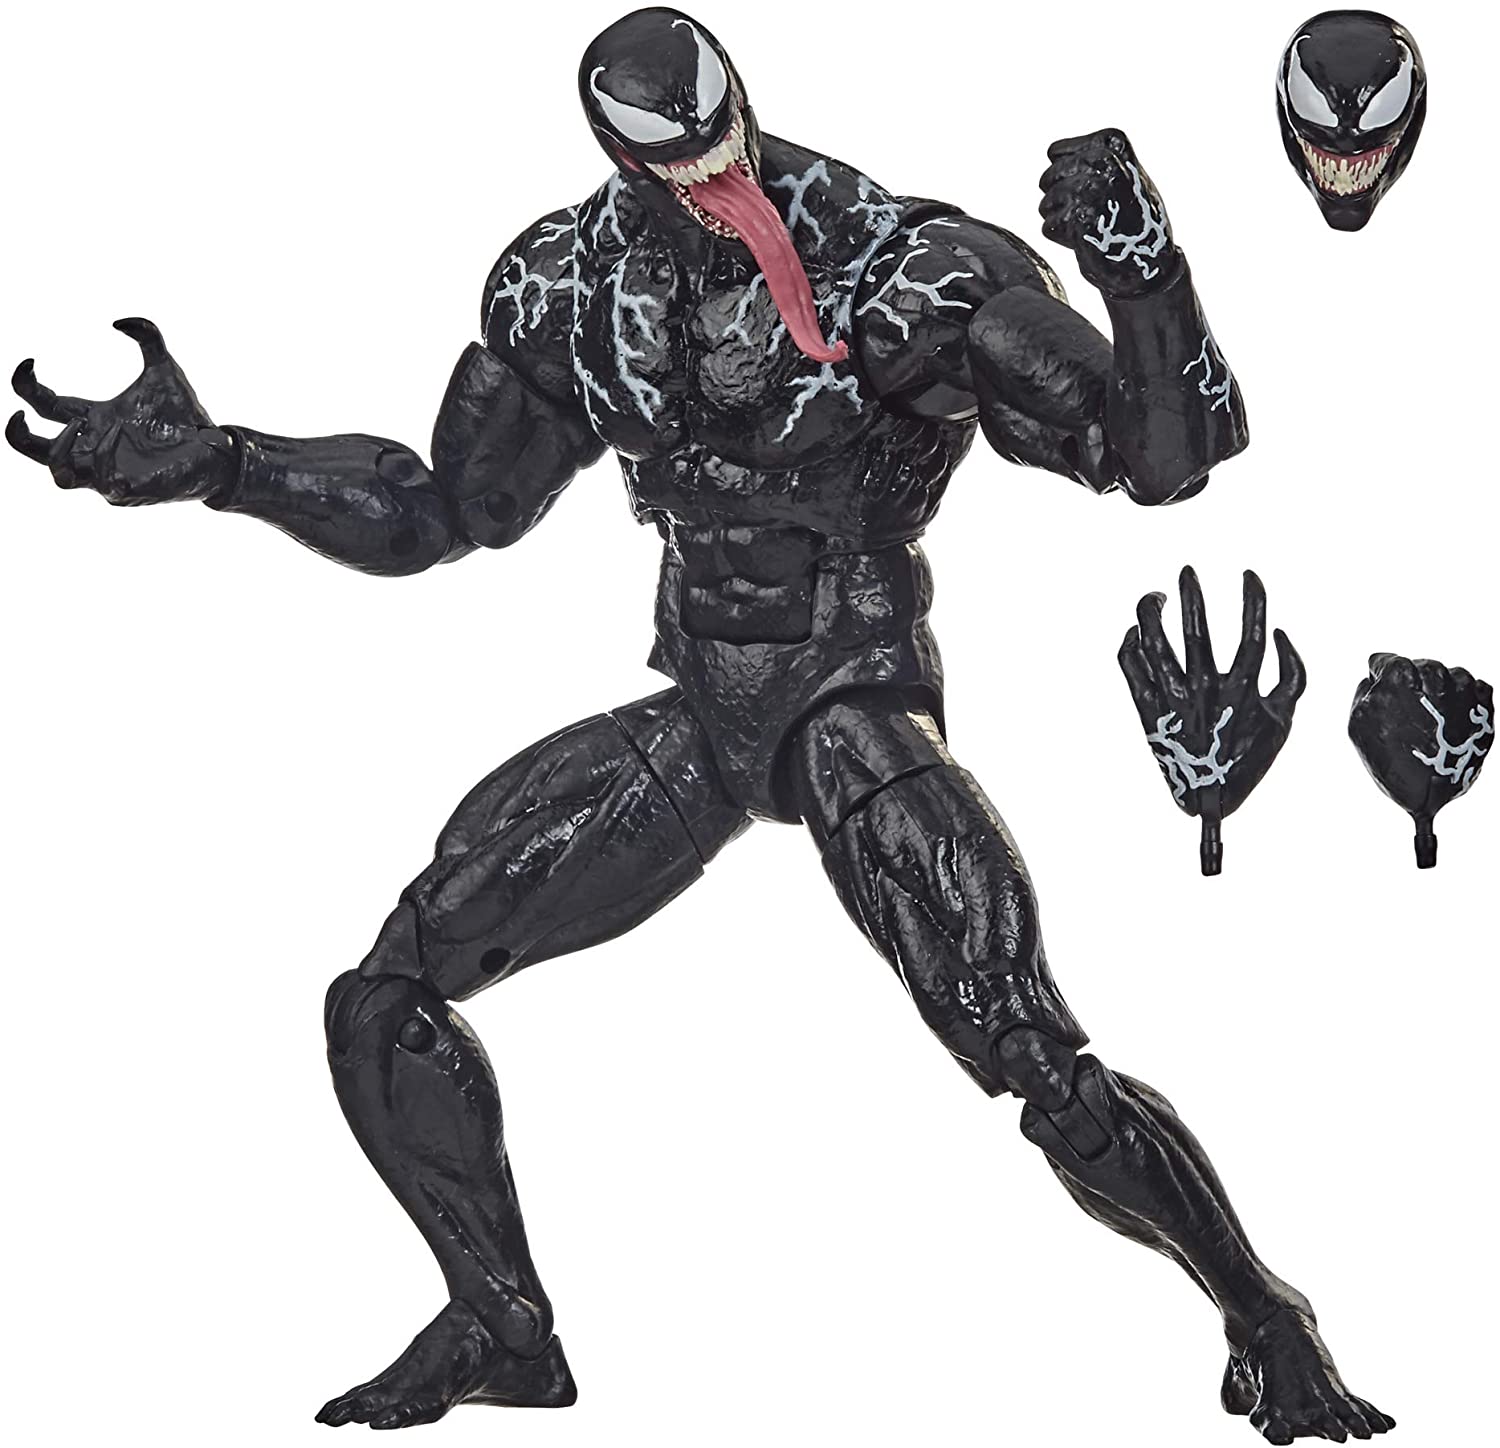 Hasbro Marvel Legends Series Venom 15 Cm Large Venom Action Figure, Premium